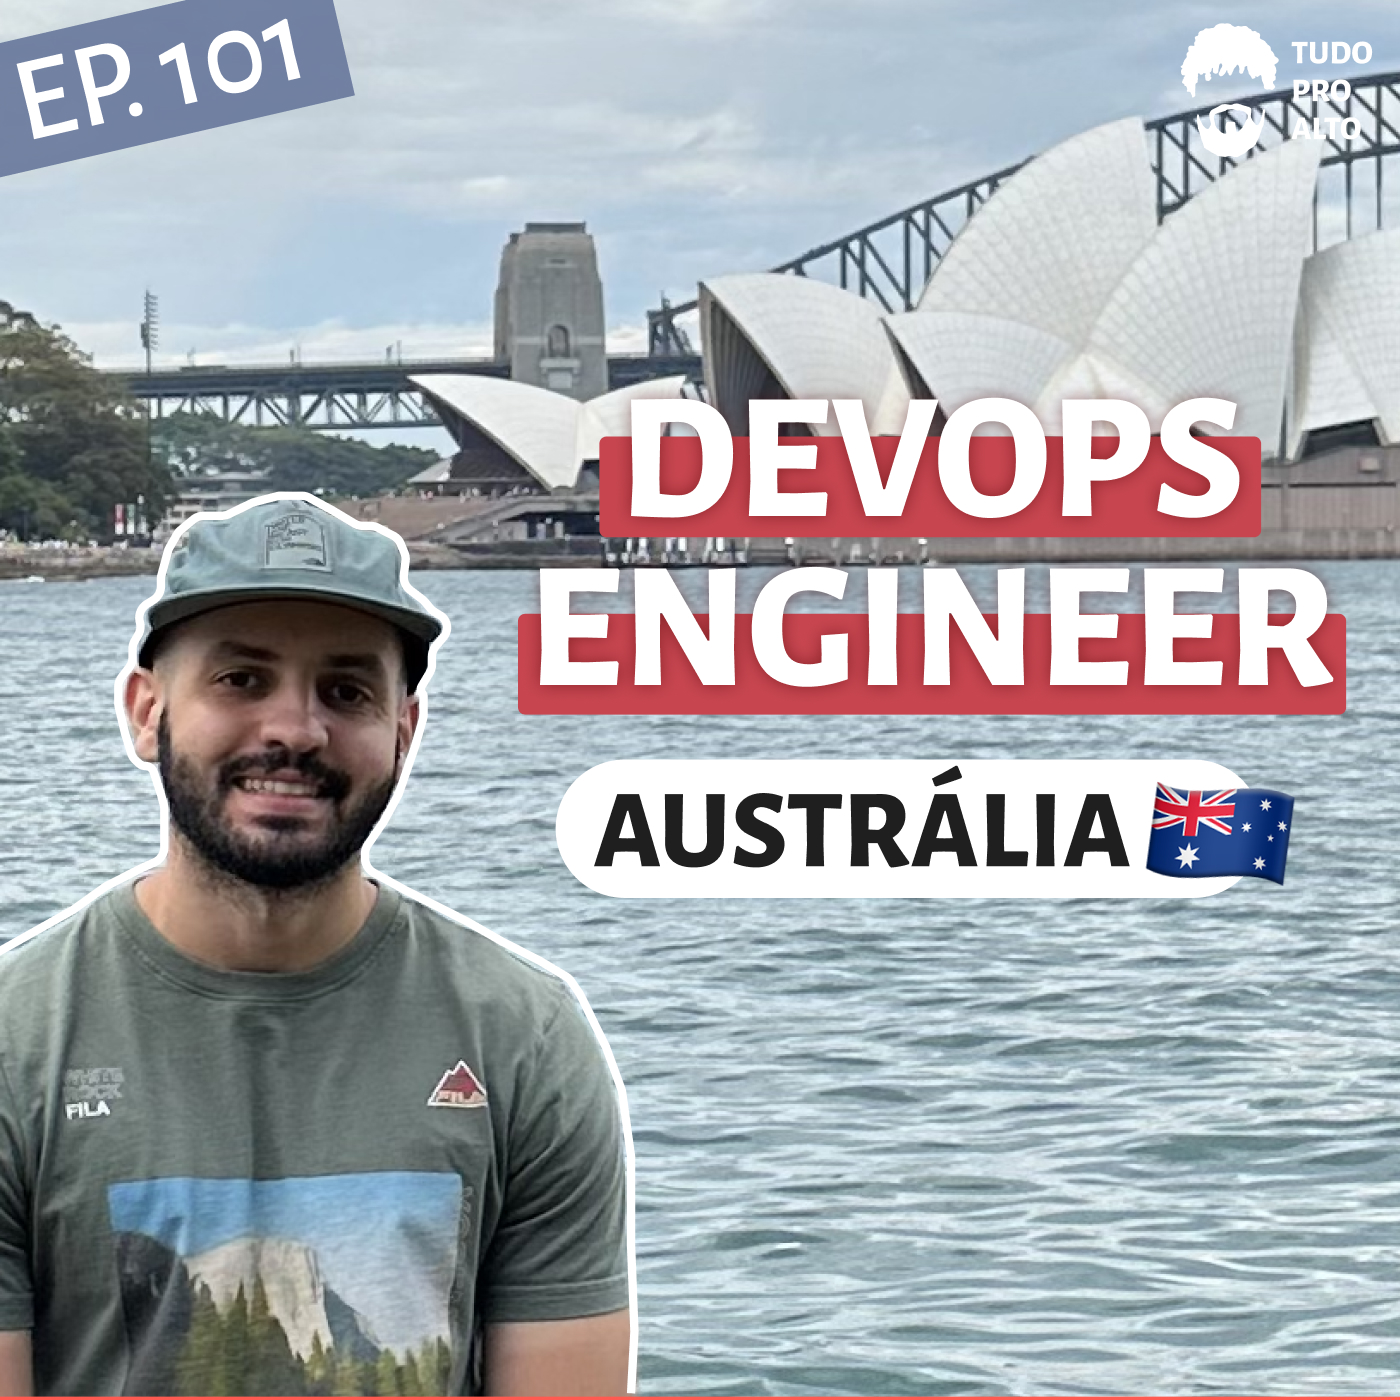 DevOps Engineer em Sidney, Austrália, com Adriano Martins - Trabalho Remoto e Mudança de País #101